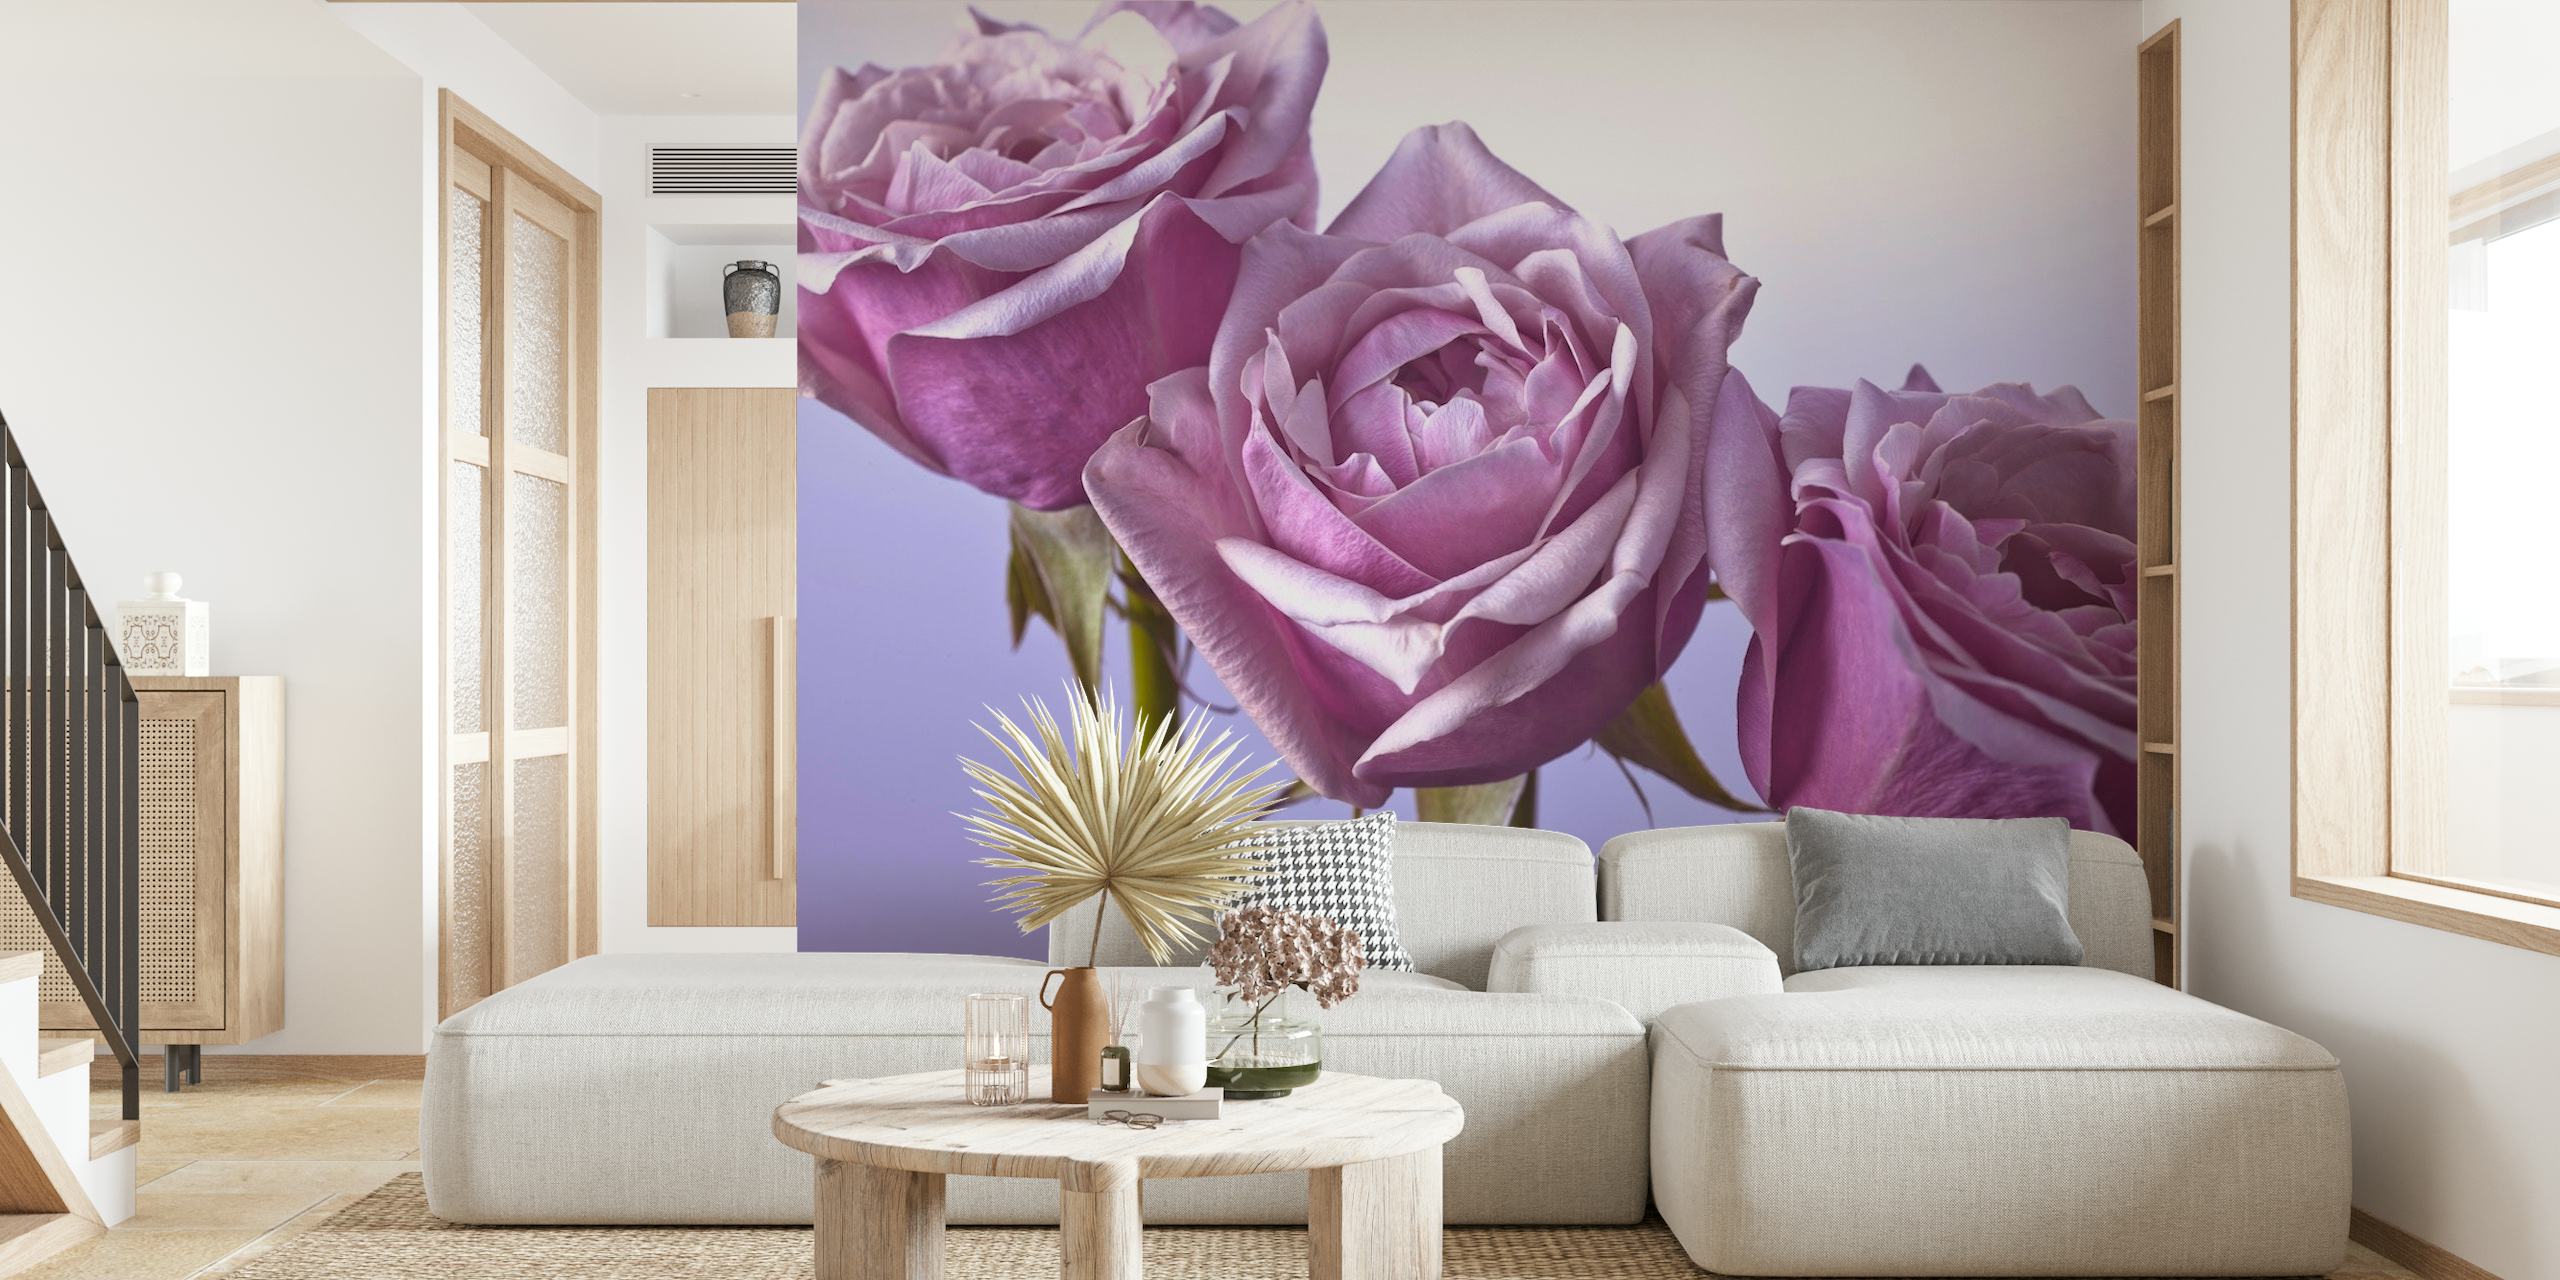 En detaljerad tapet av tre lila rosor mot en mjuk bakgrund